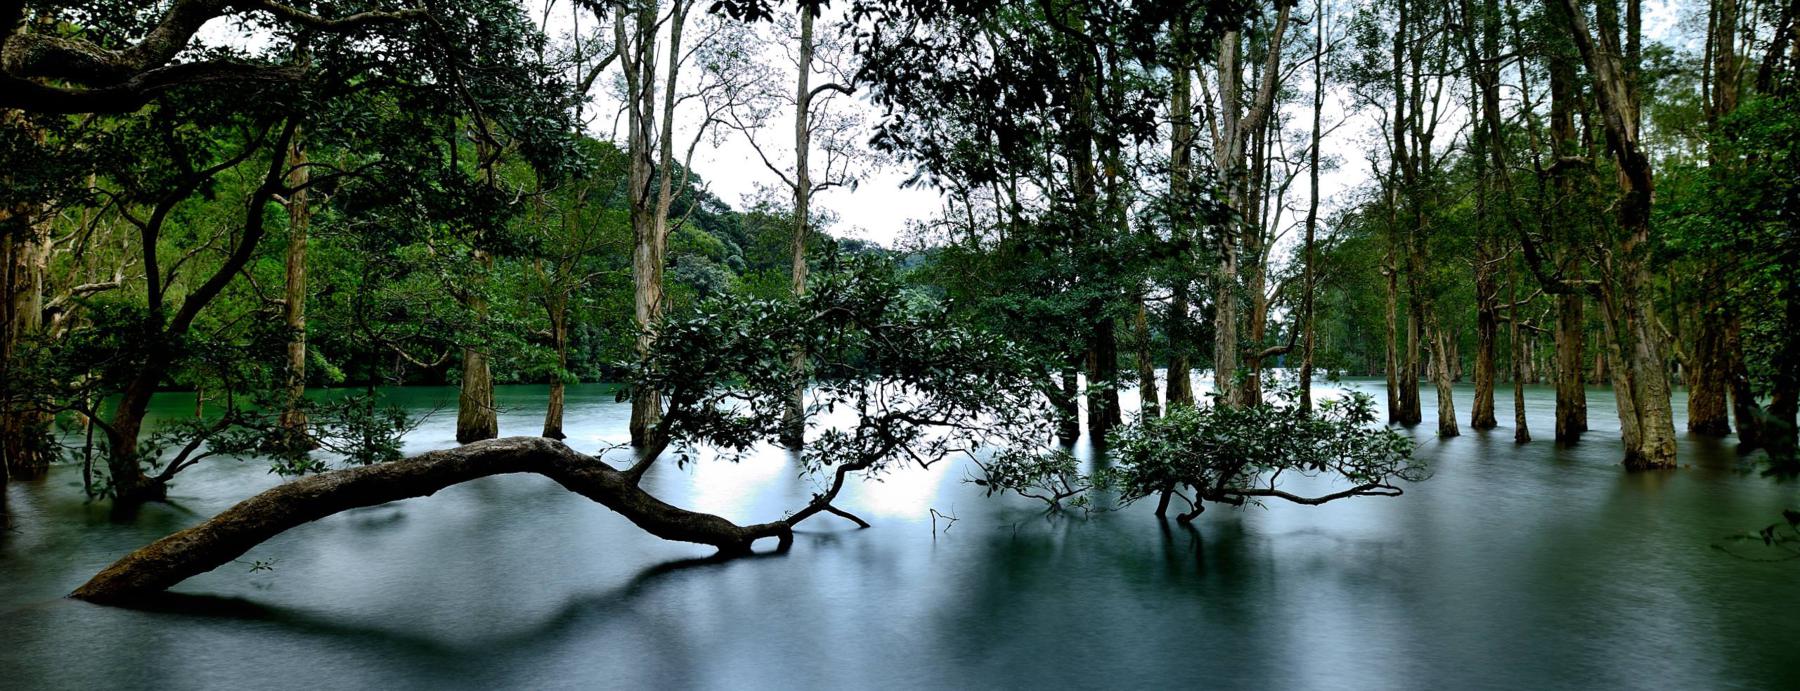 Trees in Water at Shing Mun Reservoir